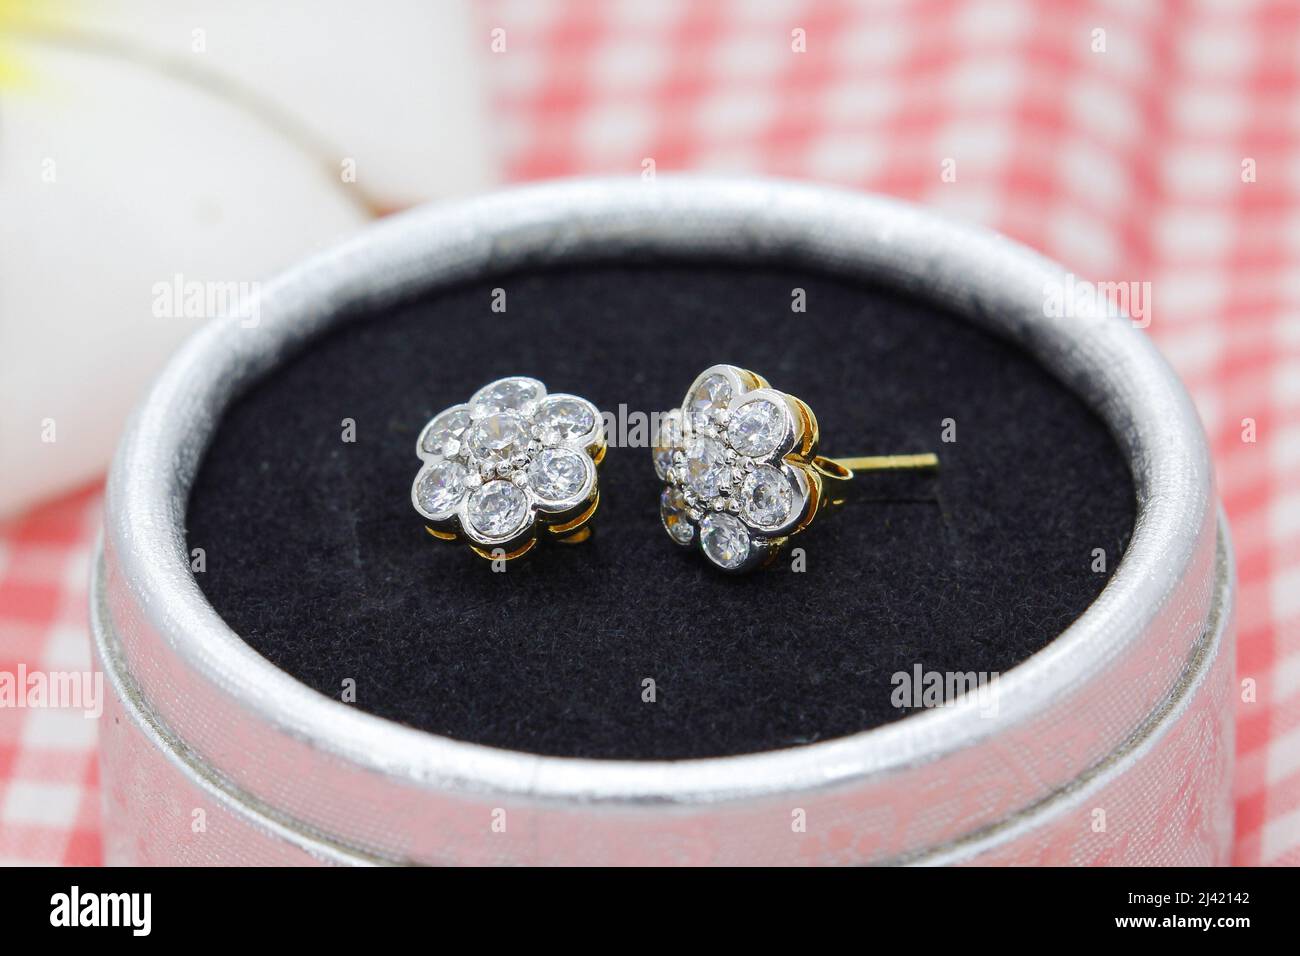 Hermosos pendientes dorados decorados con diamante en forma de flor se muestran en caja de joyas sobre fondo de tela de cuadros rojos Foto de stock